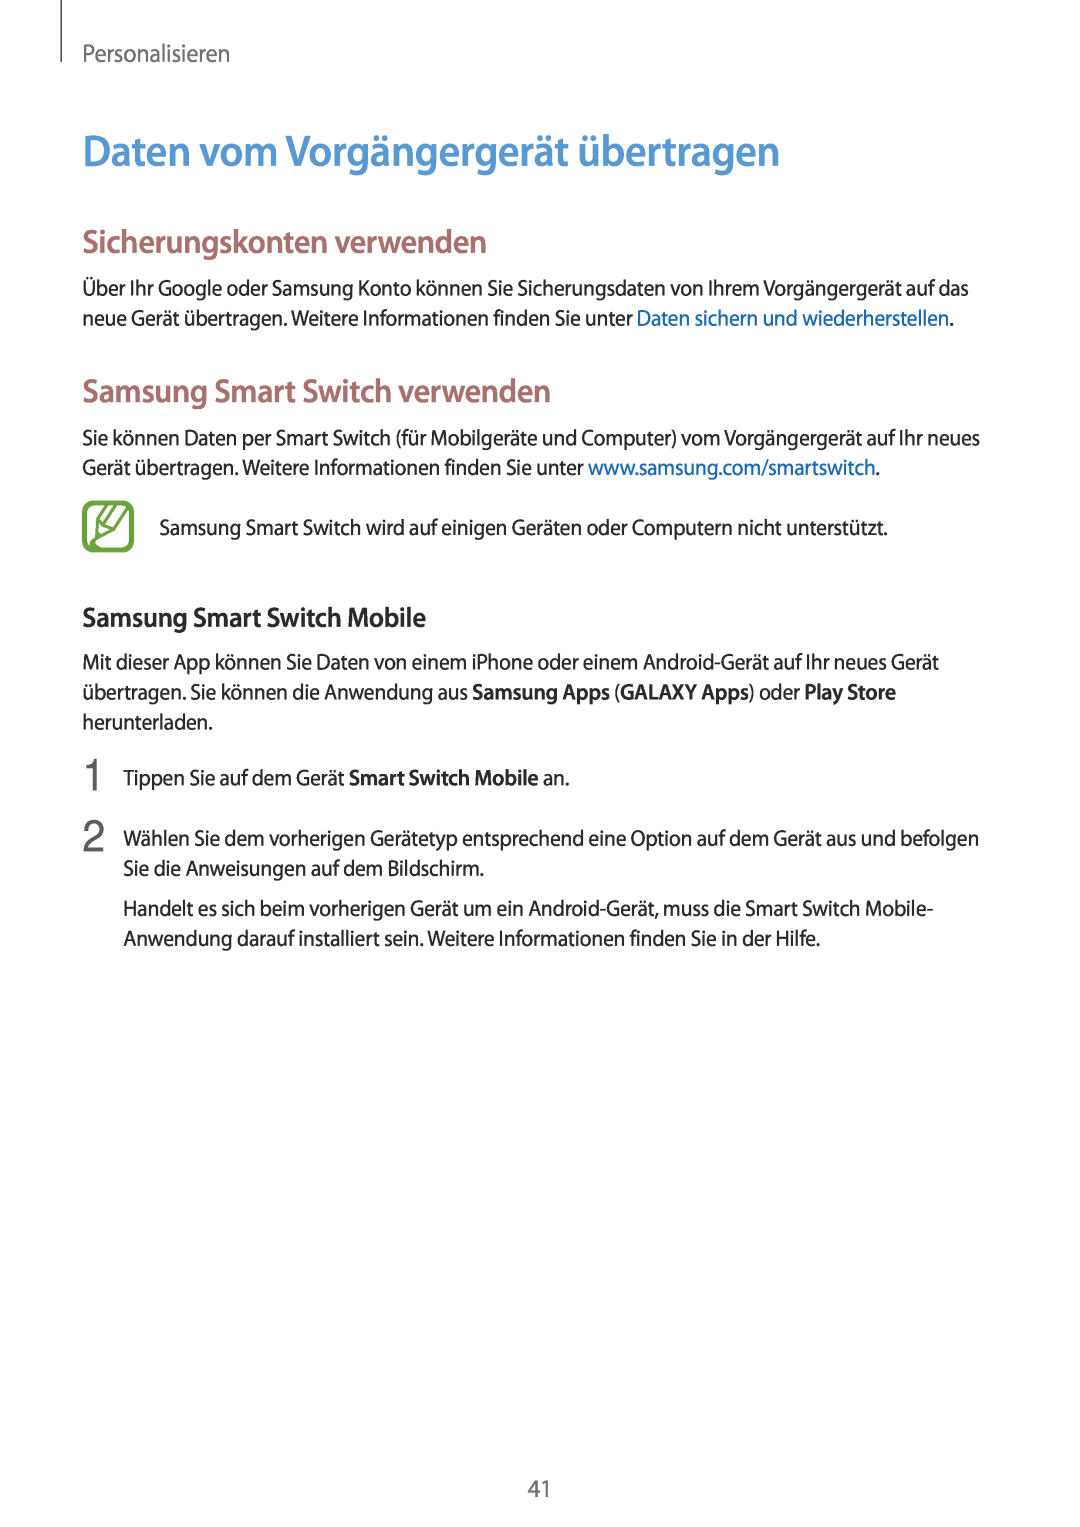 Samsung SM-G110HZKAXEF Daten vom Vorgängergerät übertragen, Sicherungskonten verwenden, Samsung Smart Switch verwenden 